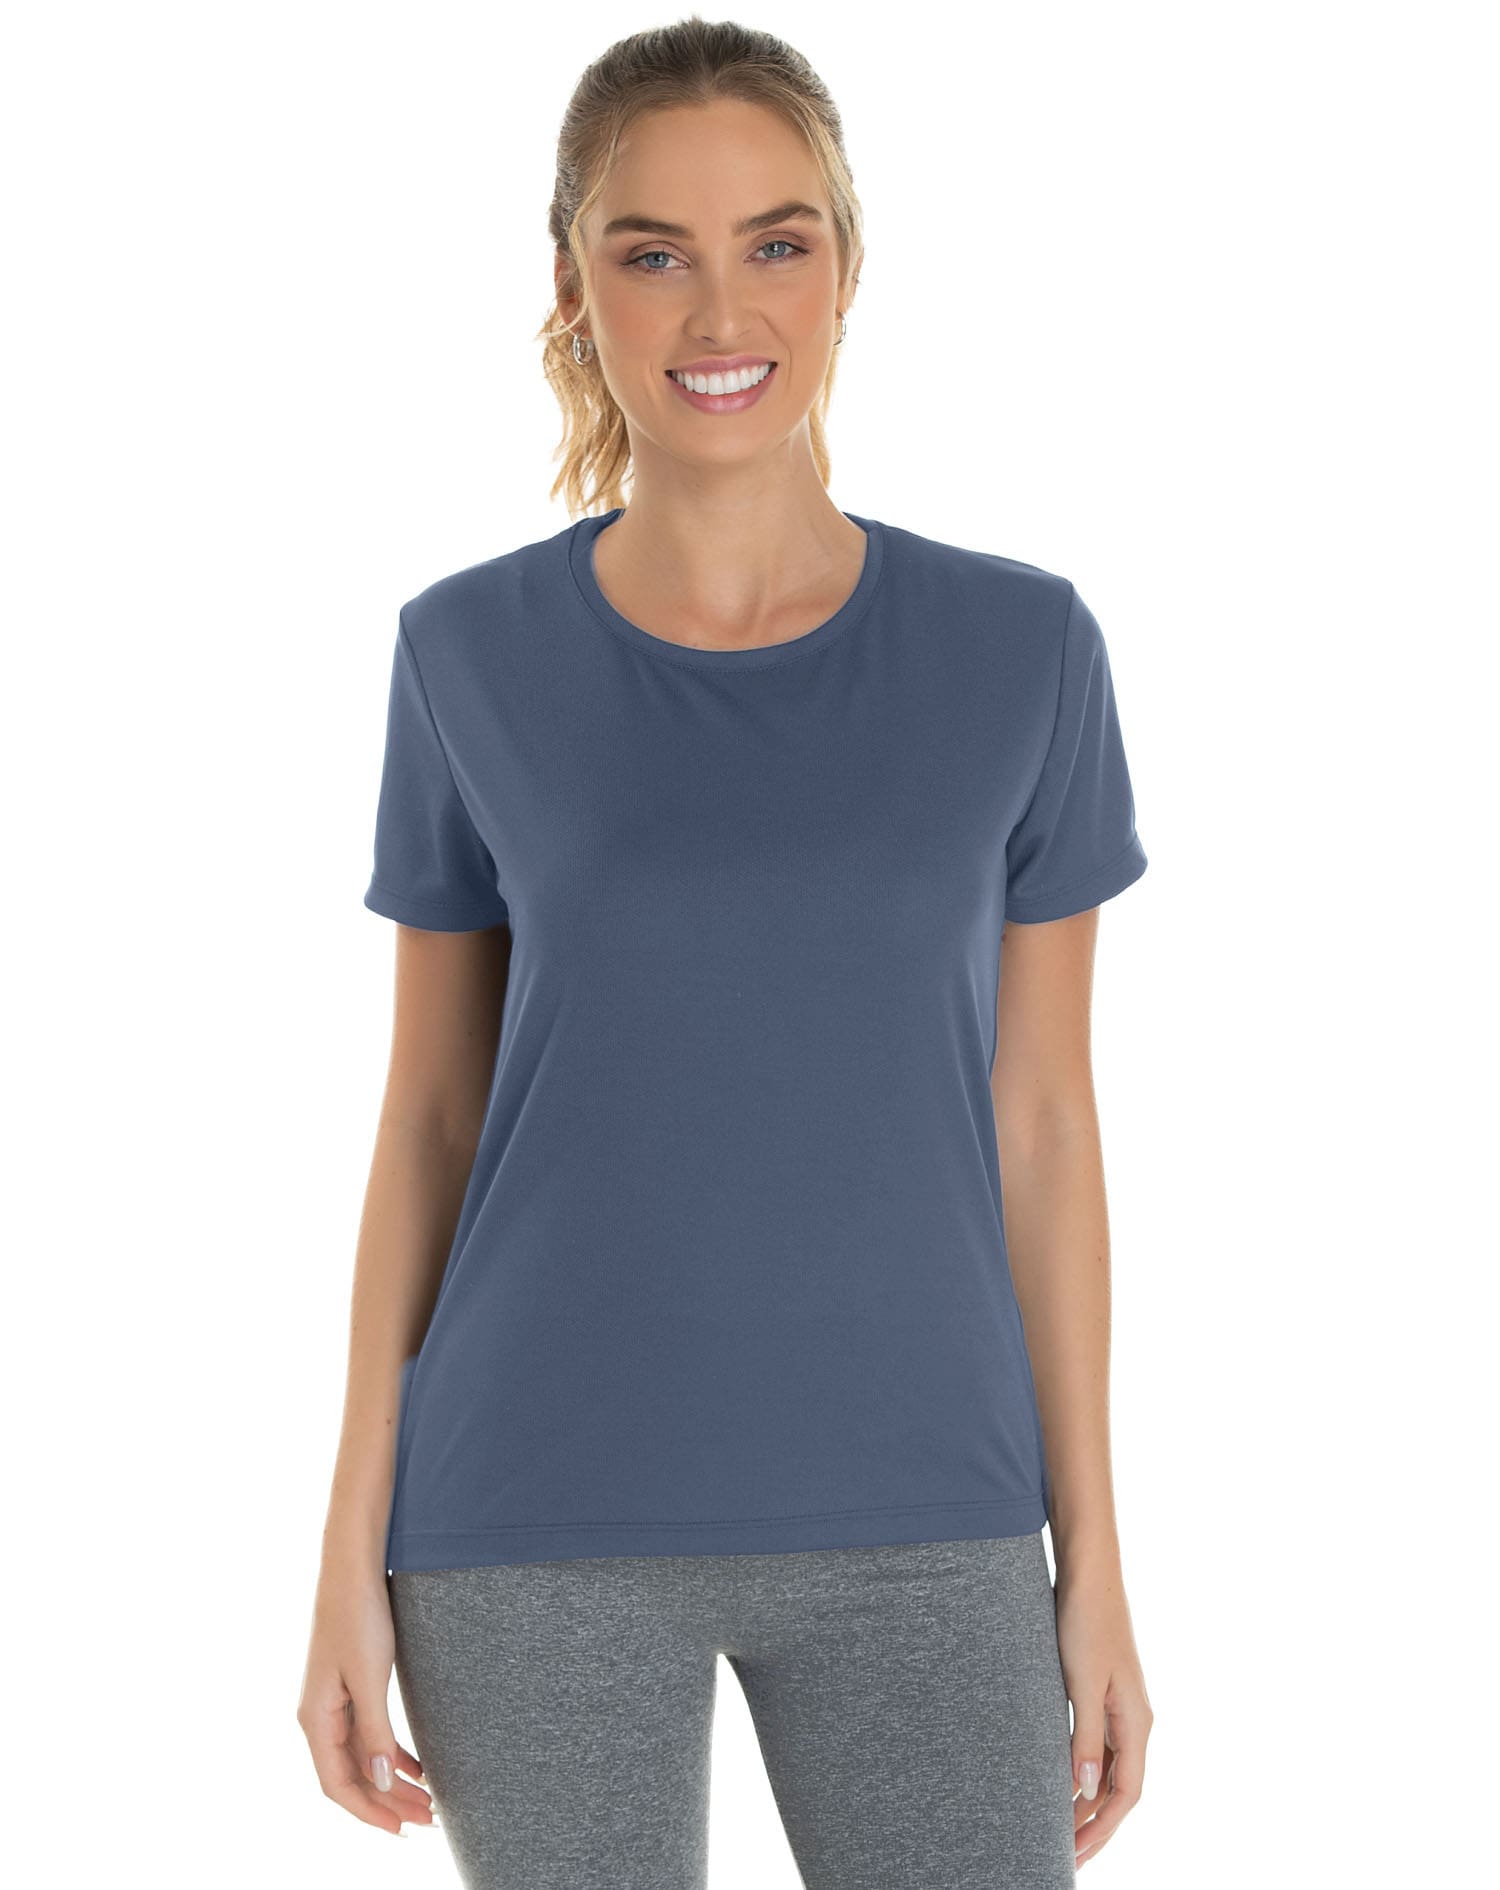 Camiseta Feminina Dry Fit Cinza Titanium Proteção UV 30+